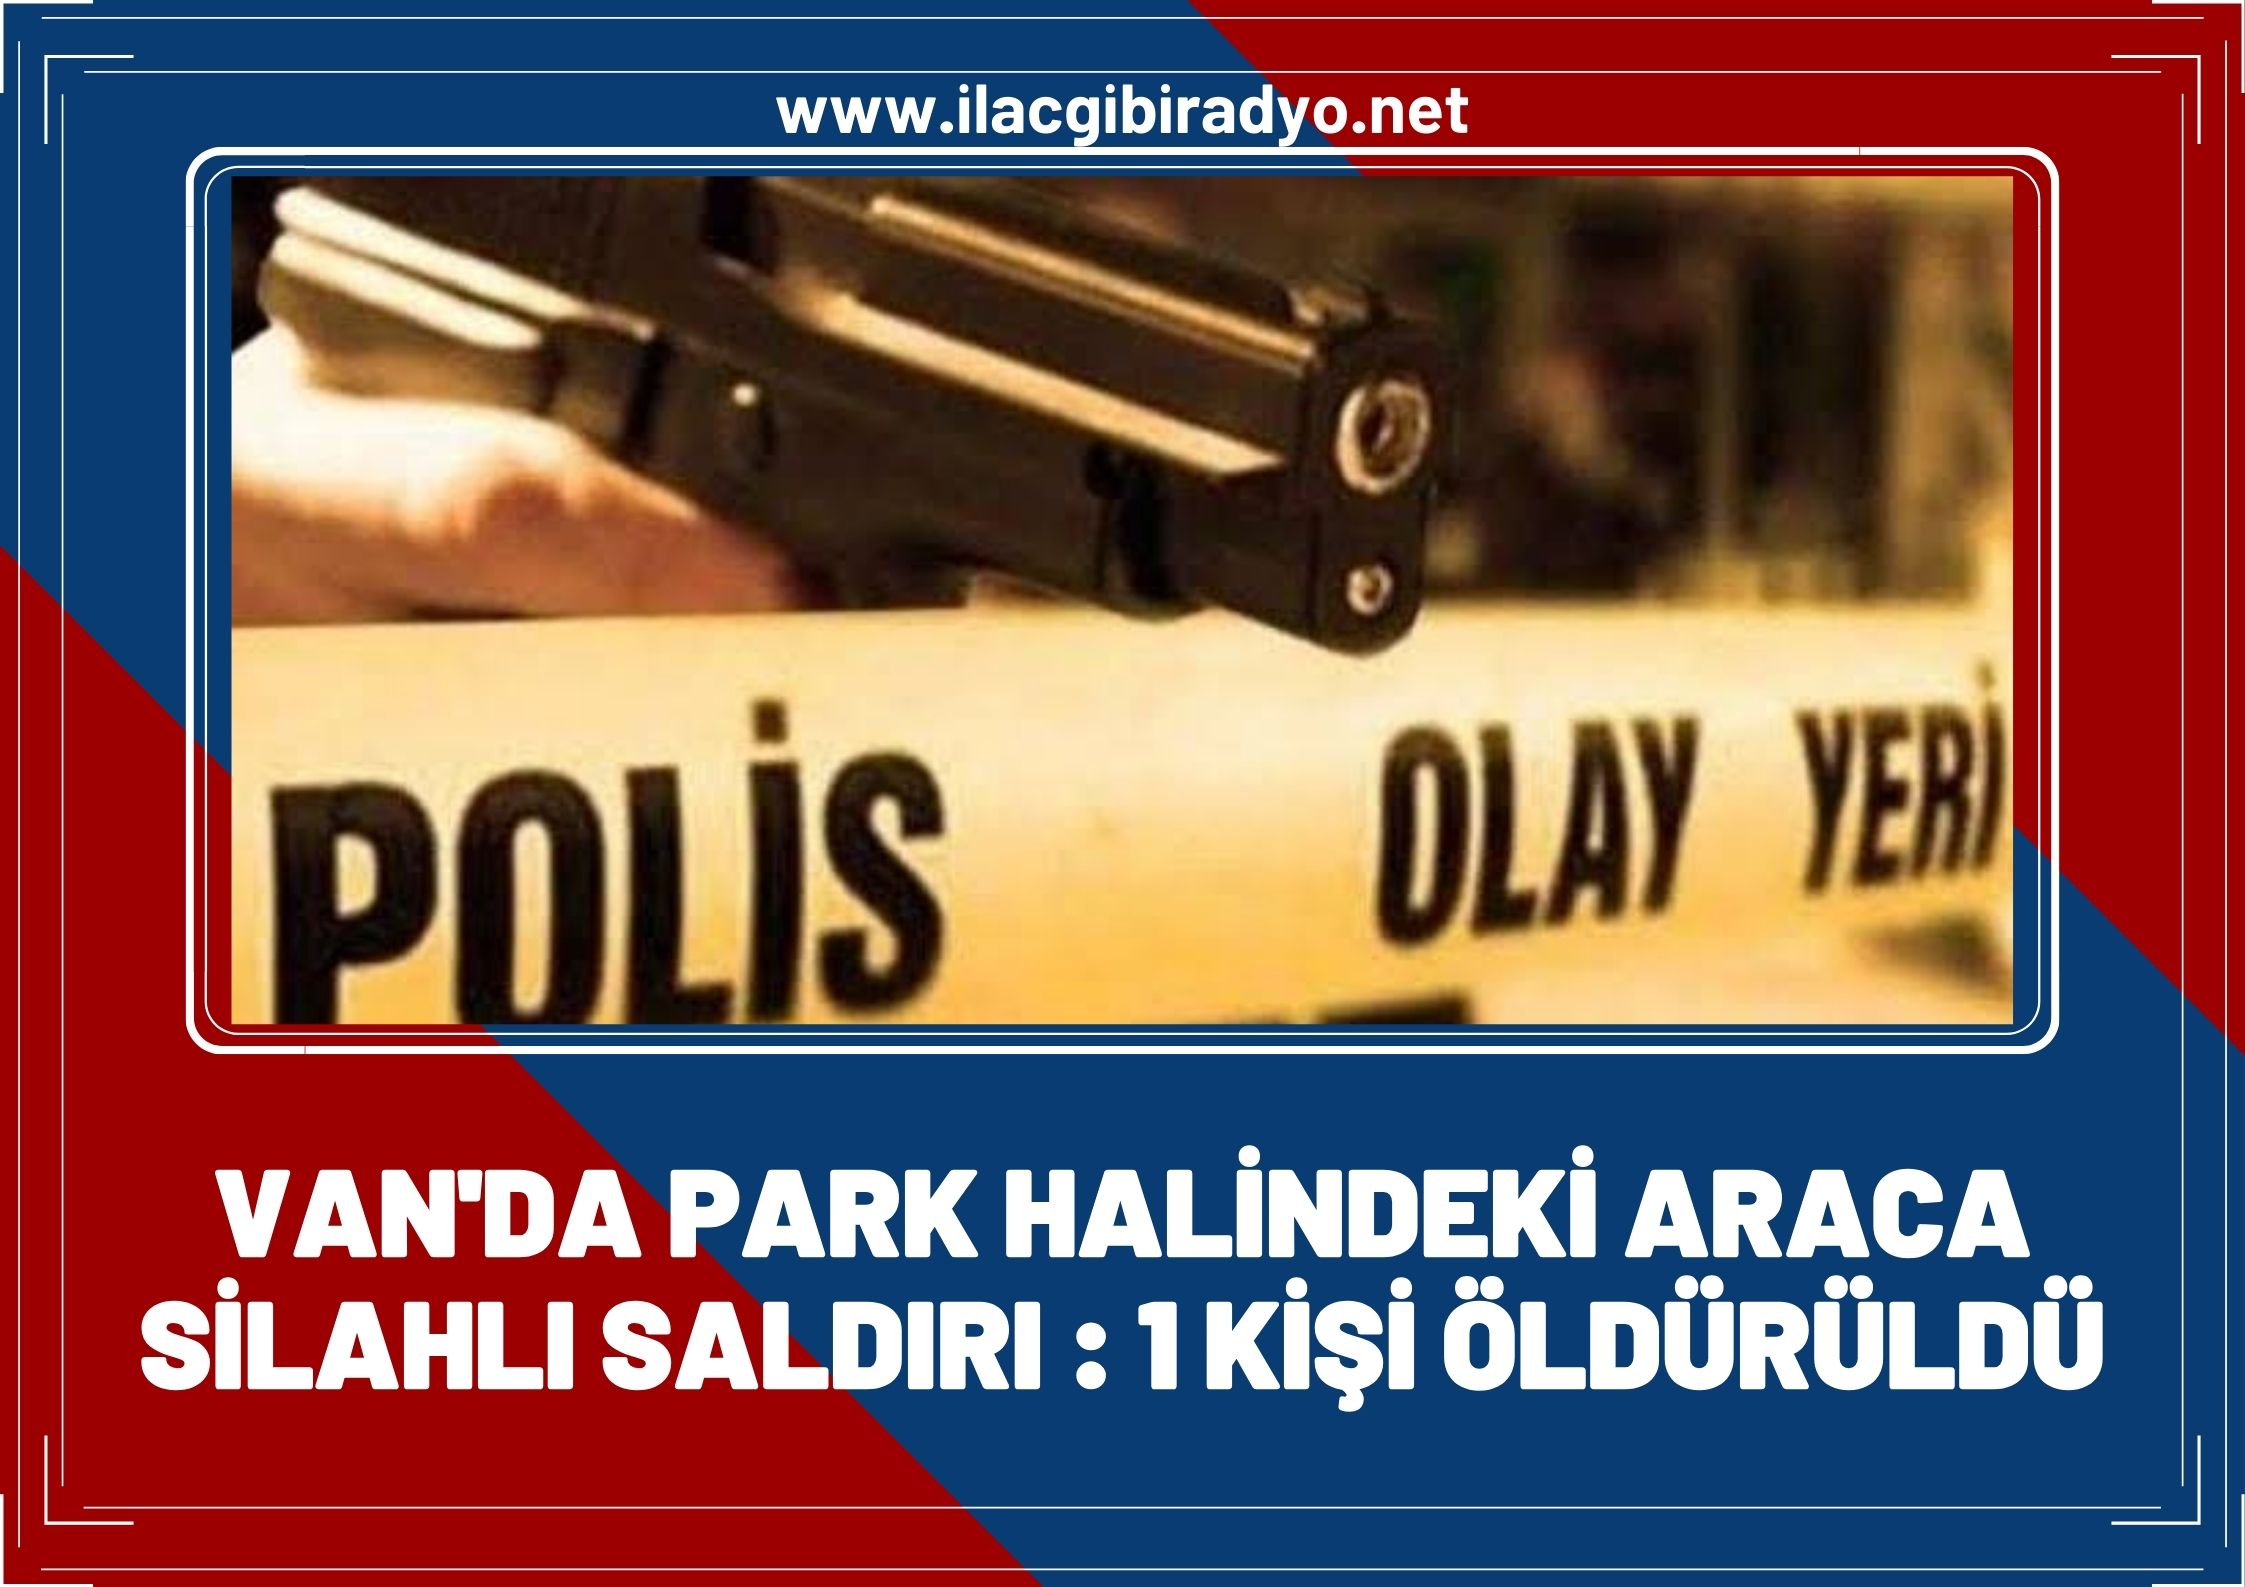 Van'da park halindeki araca silahlı saldırı: 1 kişi öldürüldü!